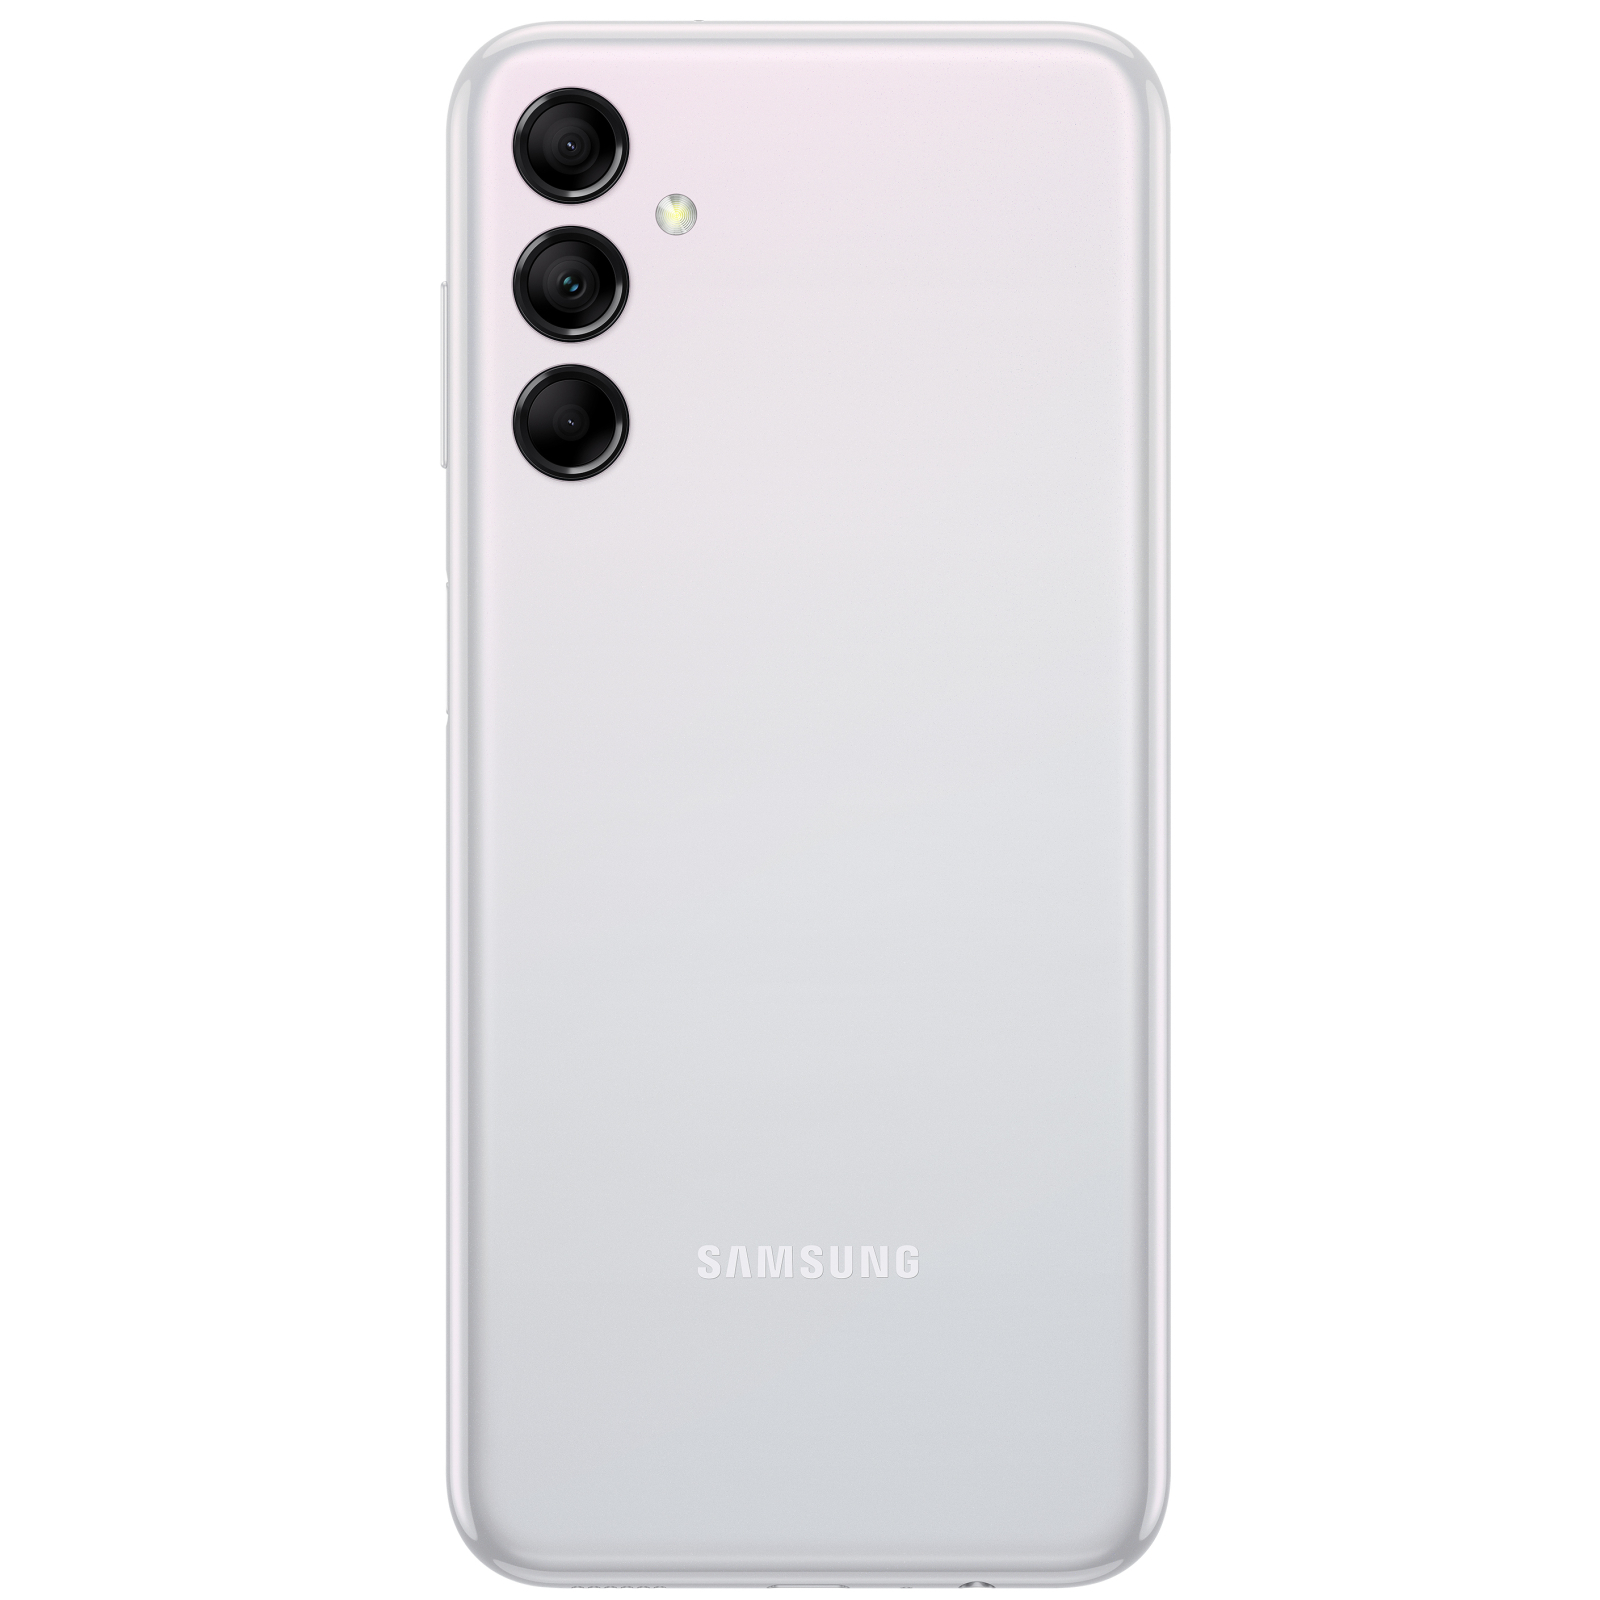 Мобильный телефон Samsung Galaxy M14 5G 4/64GB Blue (SM-M146BZBUSEK) изображение 3